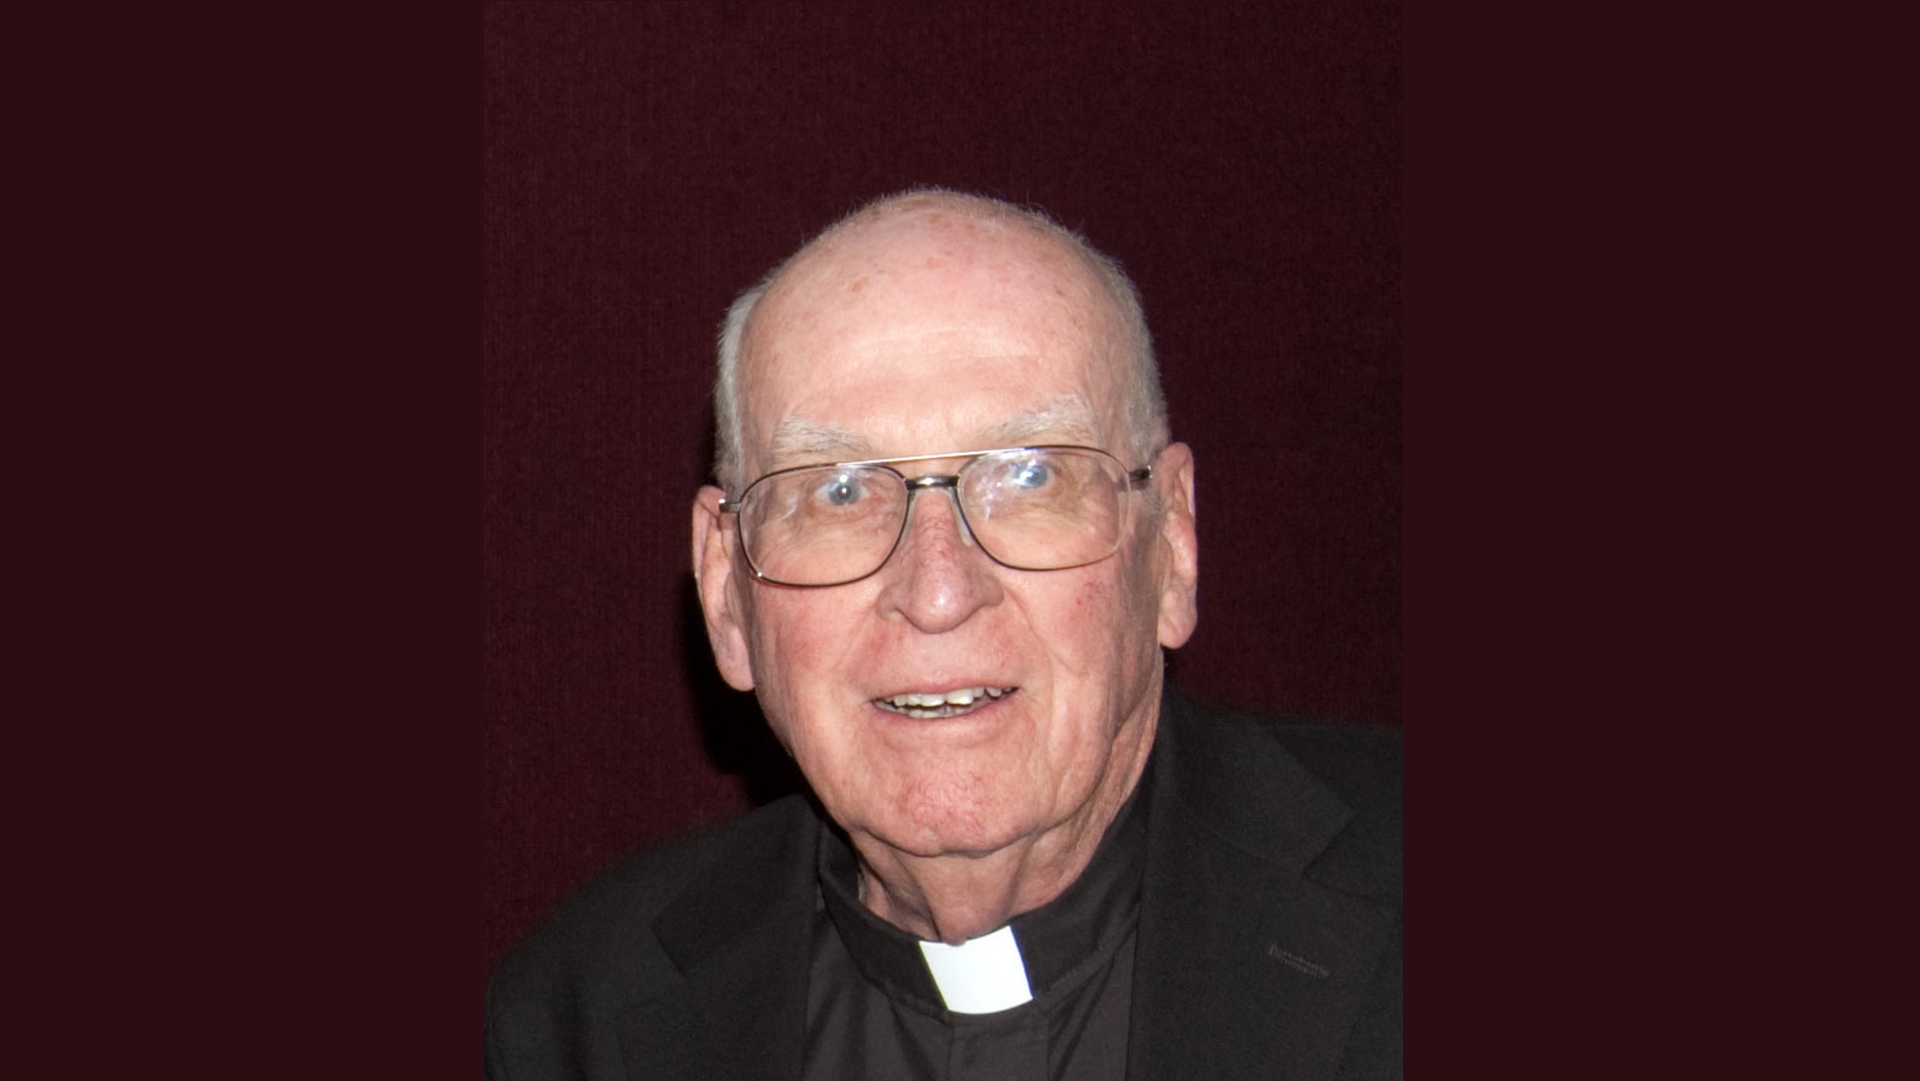 Le Père Geroge Coyne, ancien directeur de L'Observatoire du Vatican | © Observatoire du Vatican CC-BY-SA-3.0